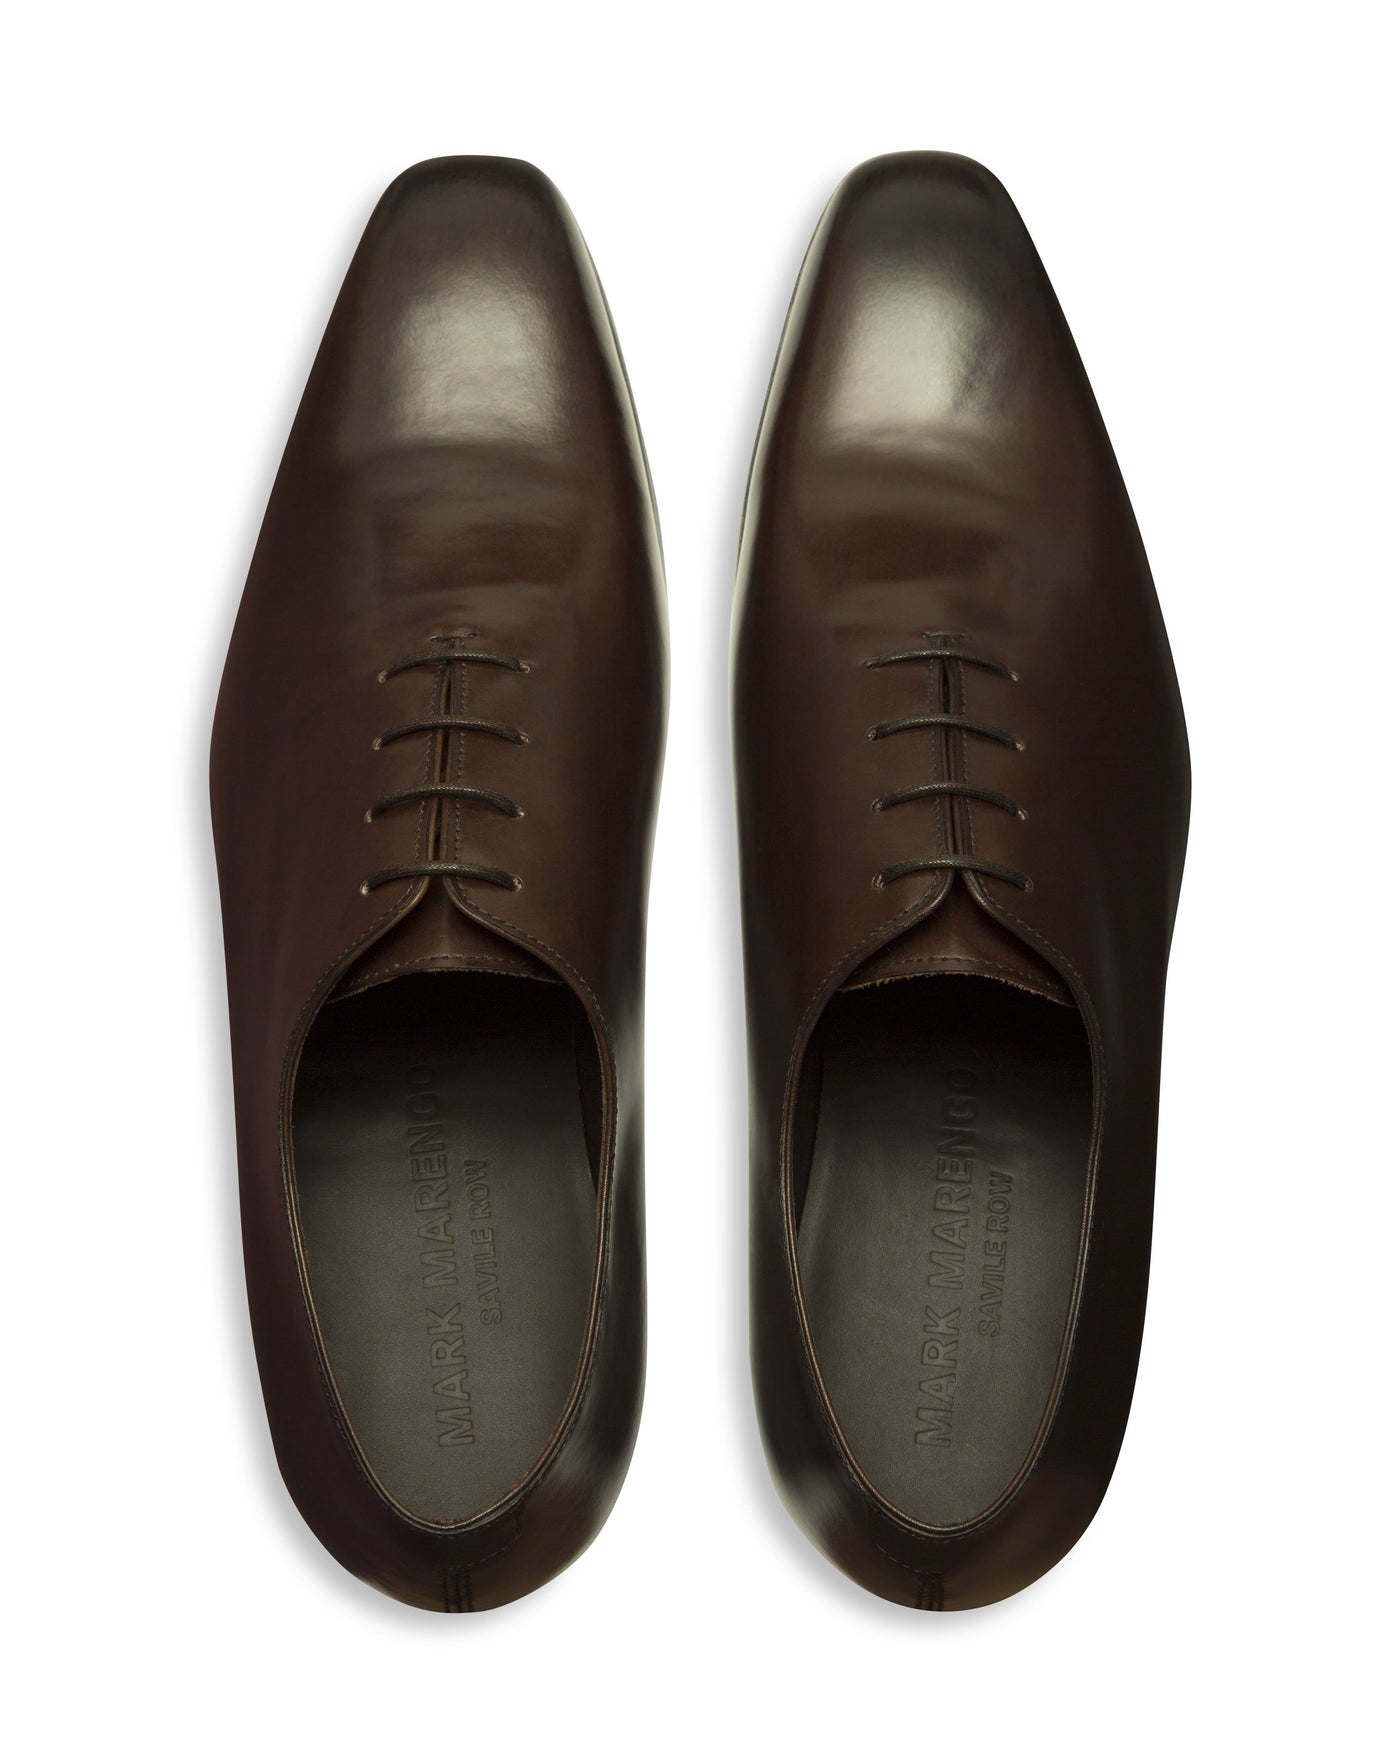 Chaussures Wholecut marron foncé cousues à la main